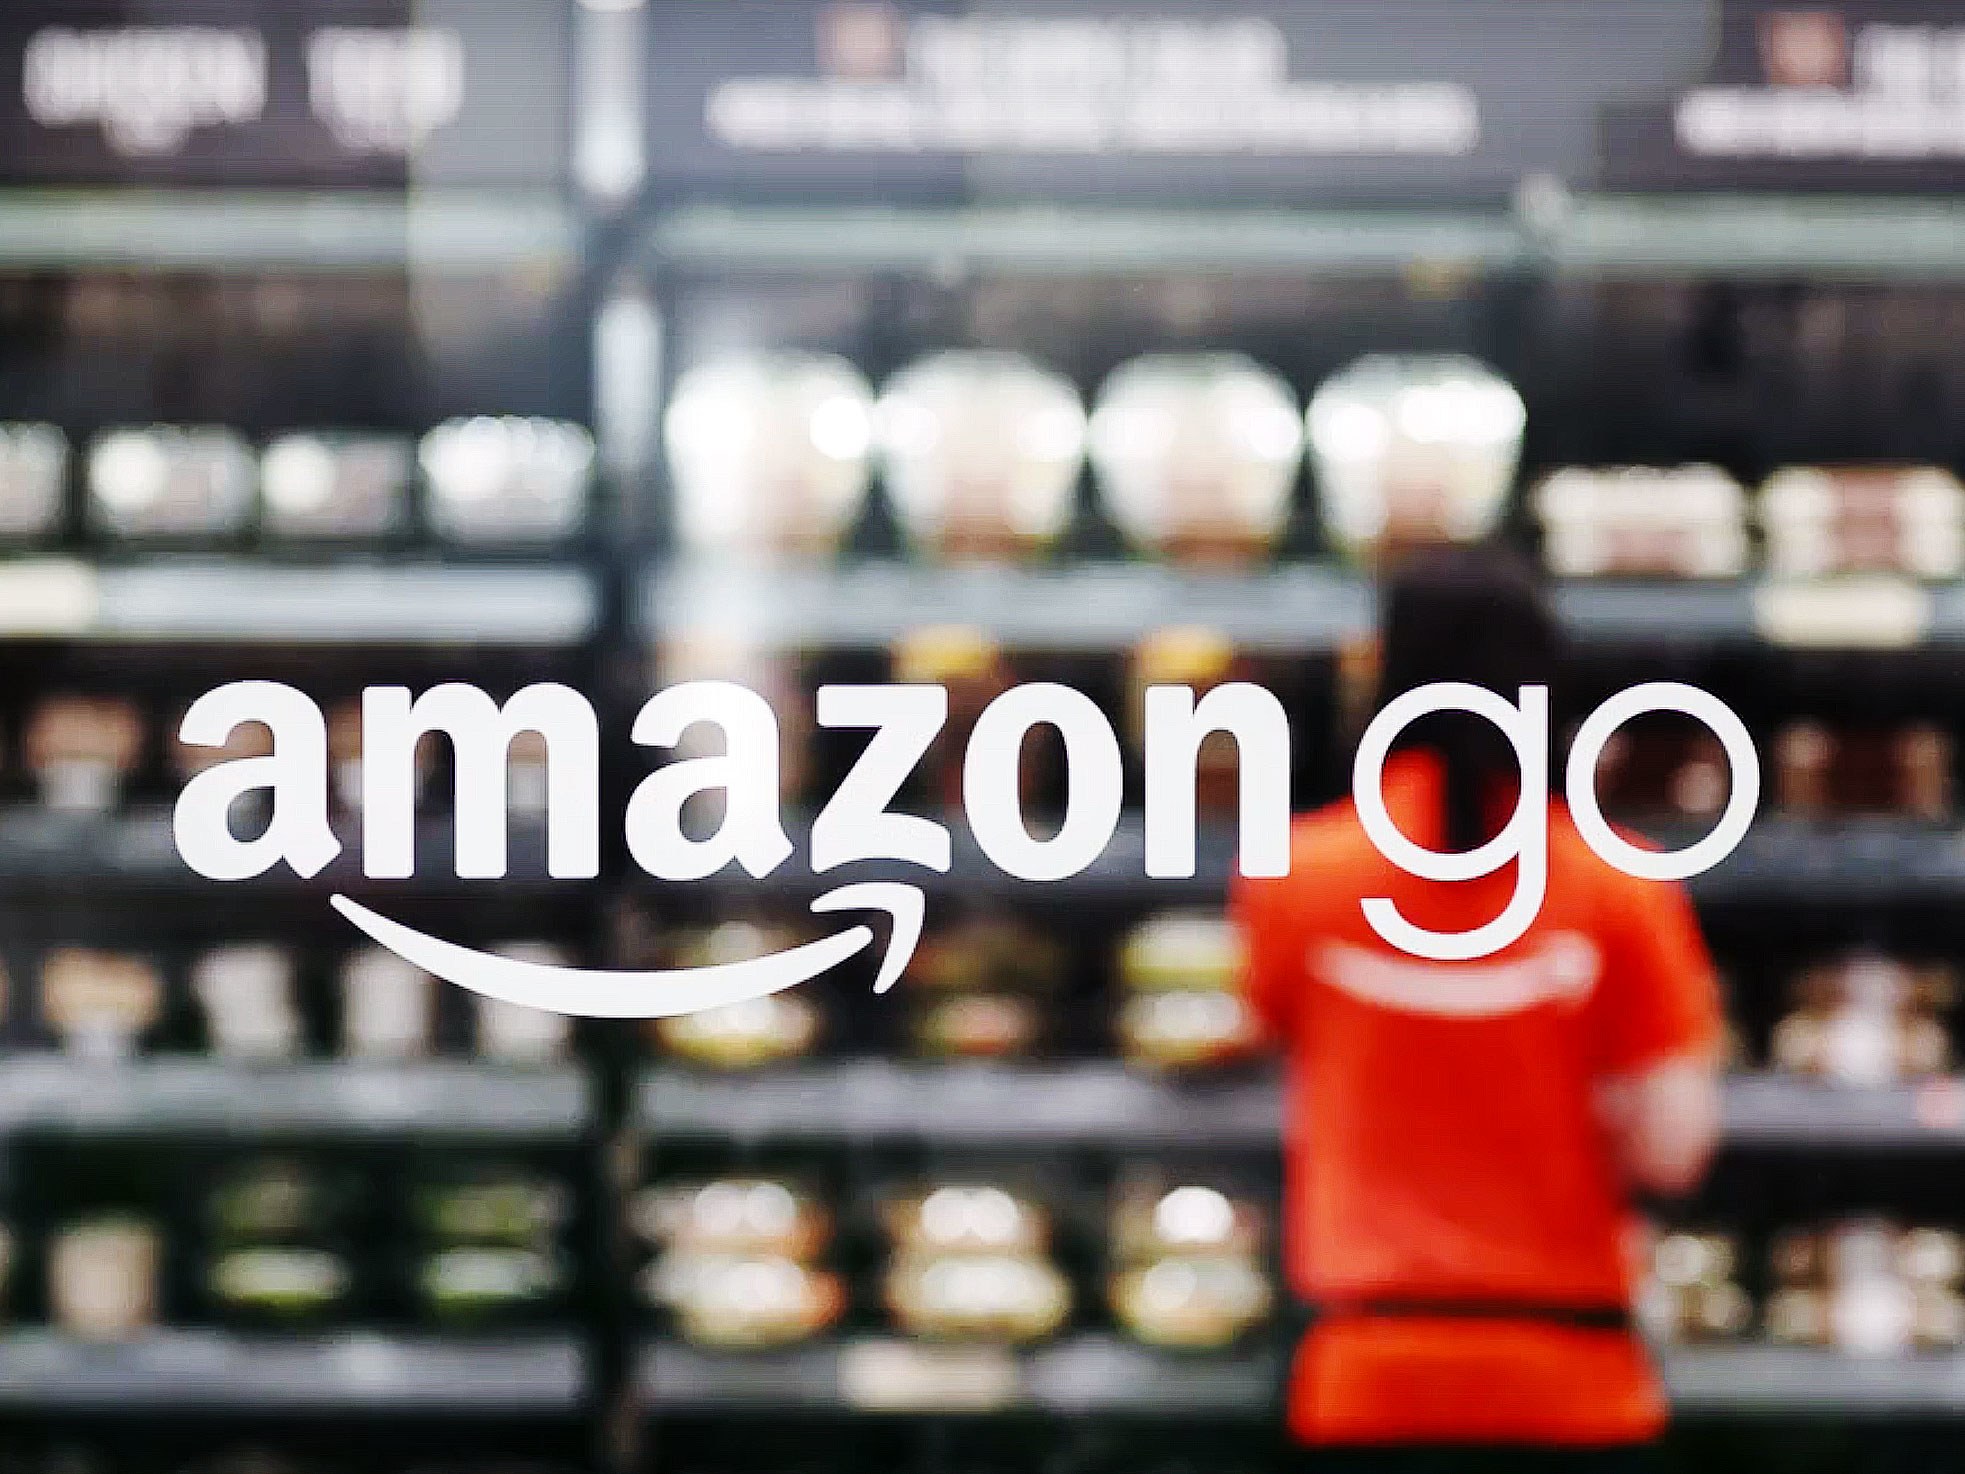 Amazon Go Supermercado Sem Caixas Fabiobmed